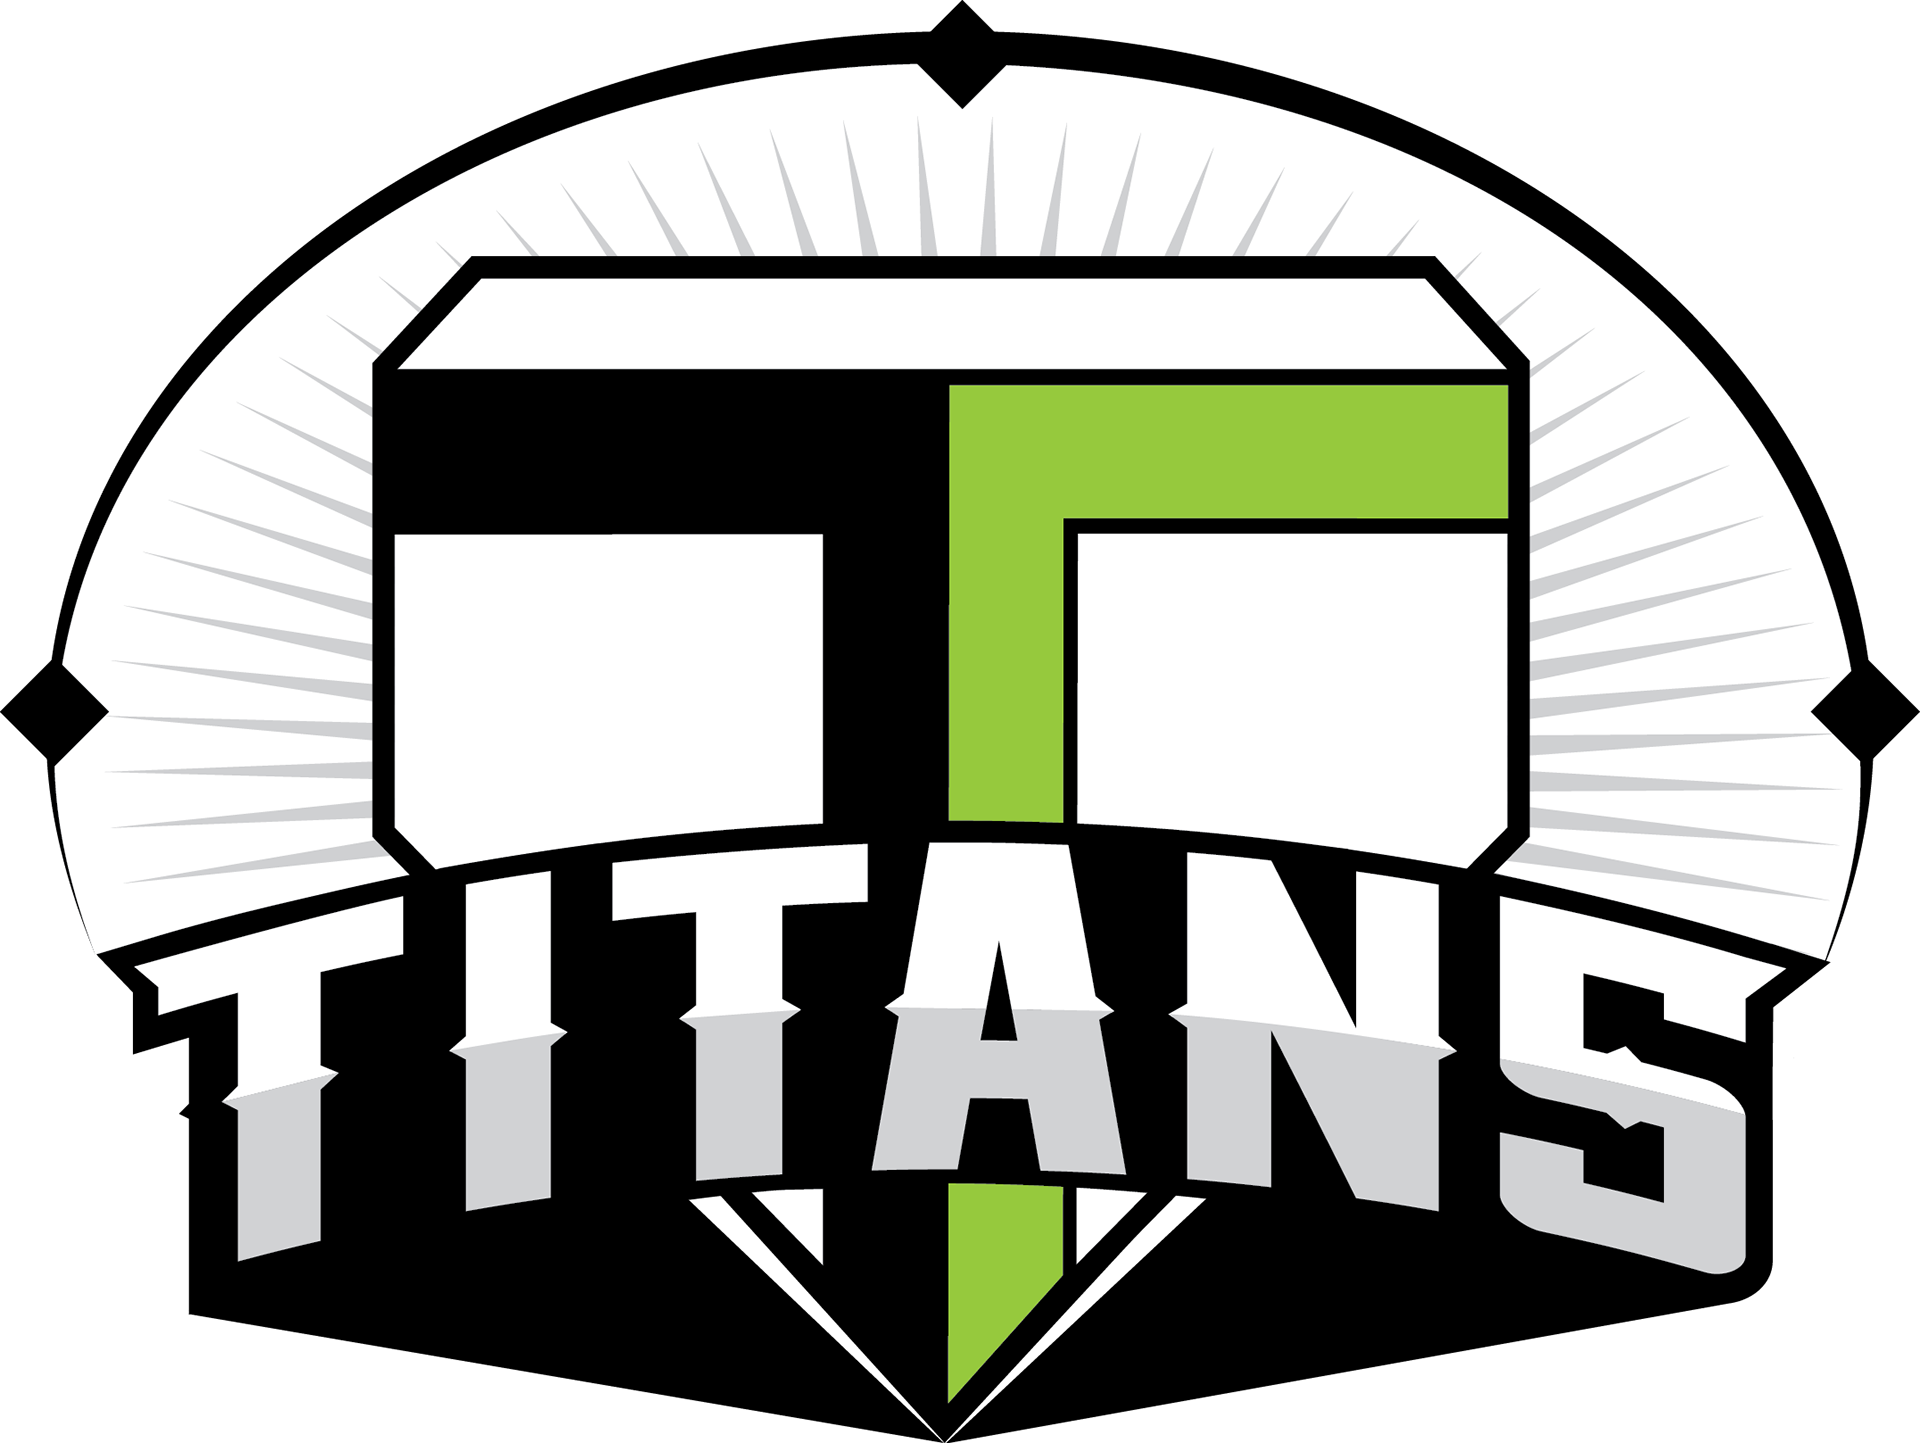 Titans Baseball Logo - Cal State Fullerton Titans Baseball (1920x1443)